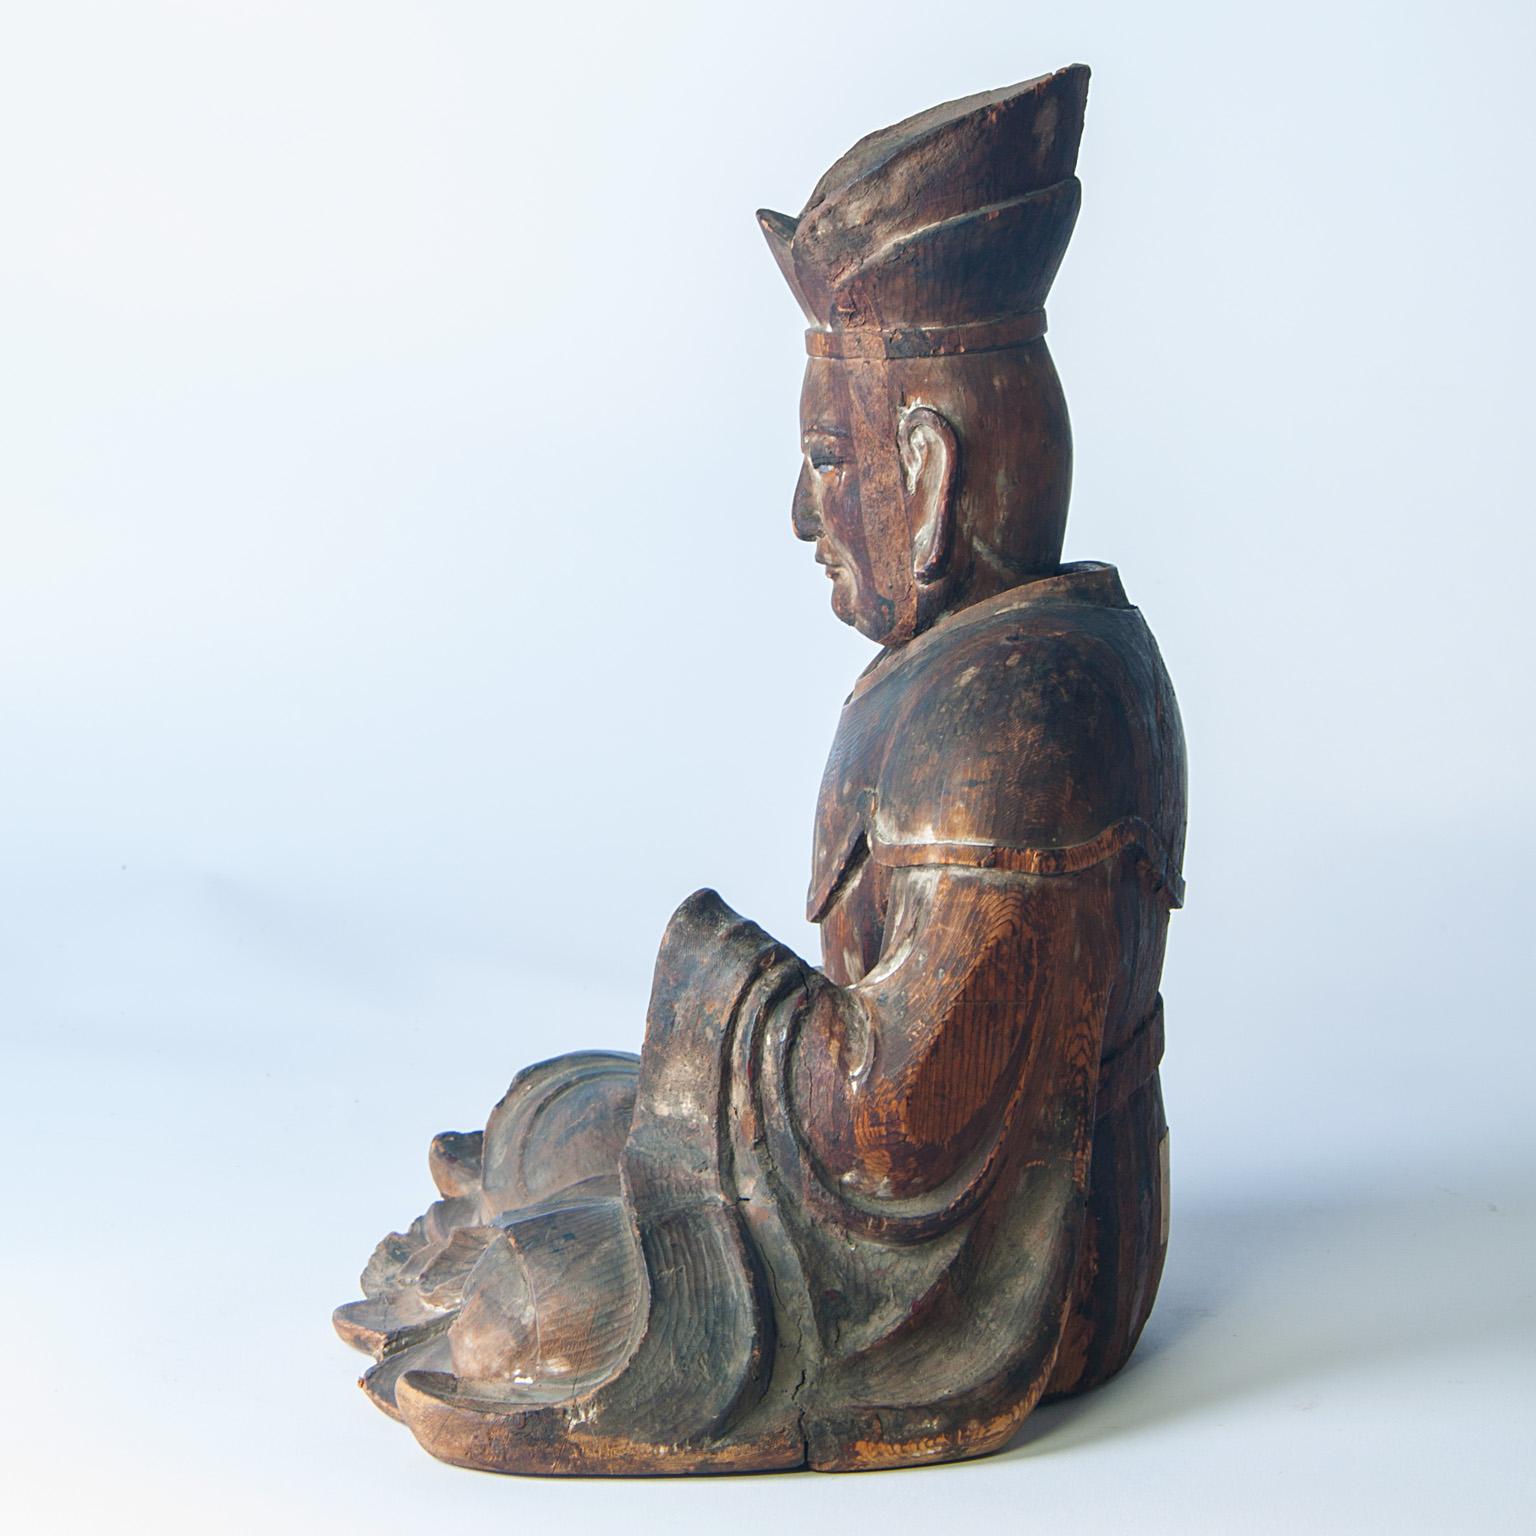 chinesische Holzfigur aus dem 18. Jahrhundert, dargestellt als Wanli.
Siehe alter Aufkleber auf der Rückseite der Figur, siehe Bild.

 